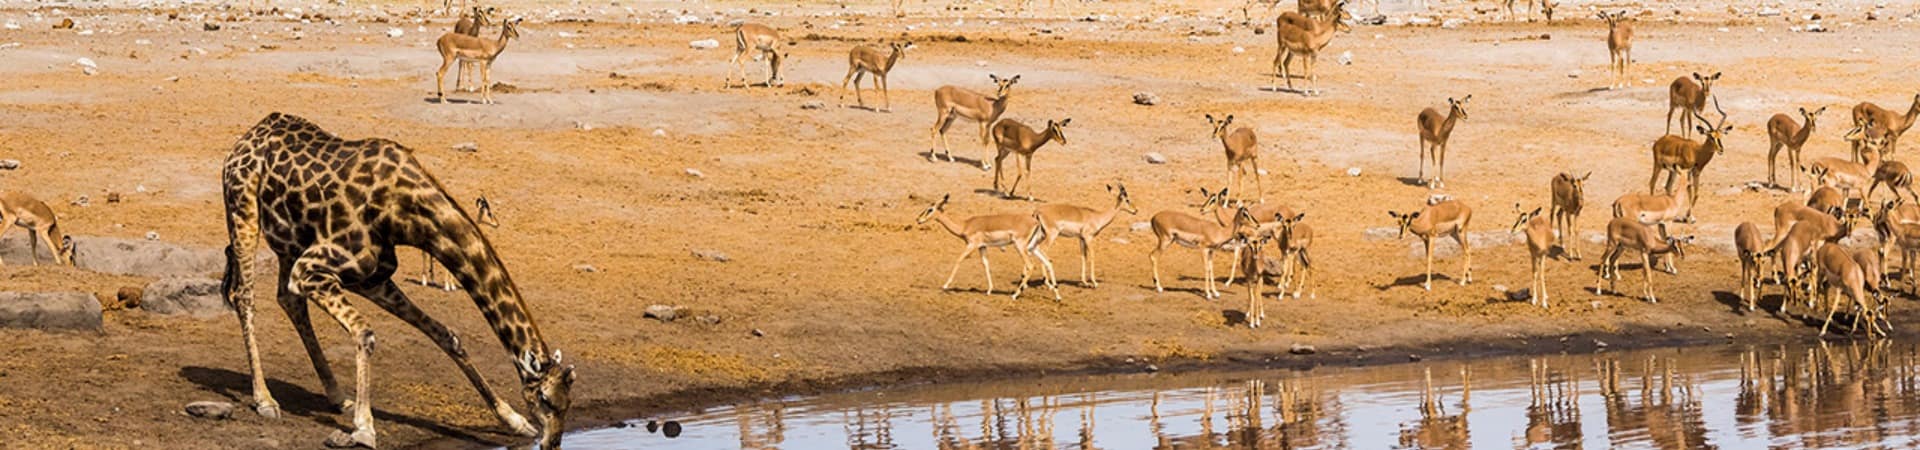 Parque nacional de Etosha - Namíbia